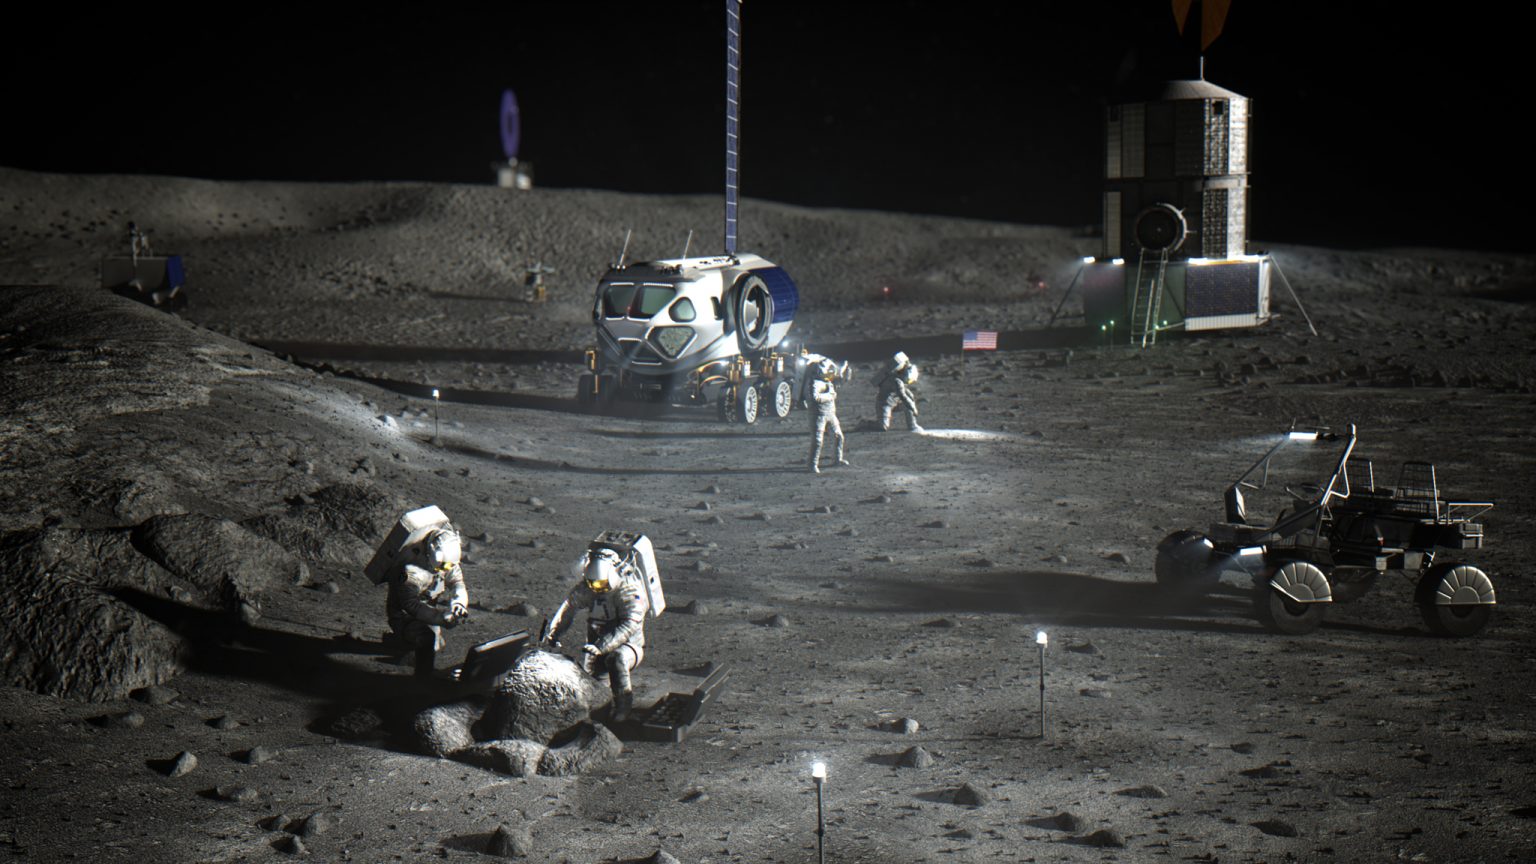 Illustration of astronauts on moon's surface.